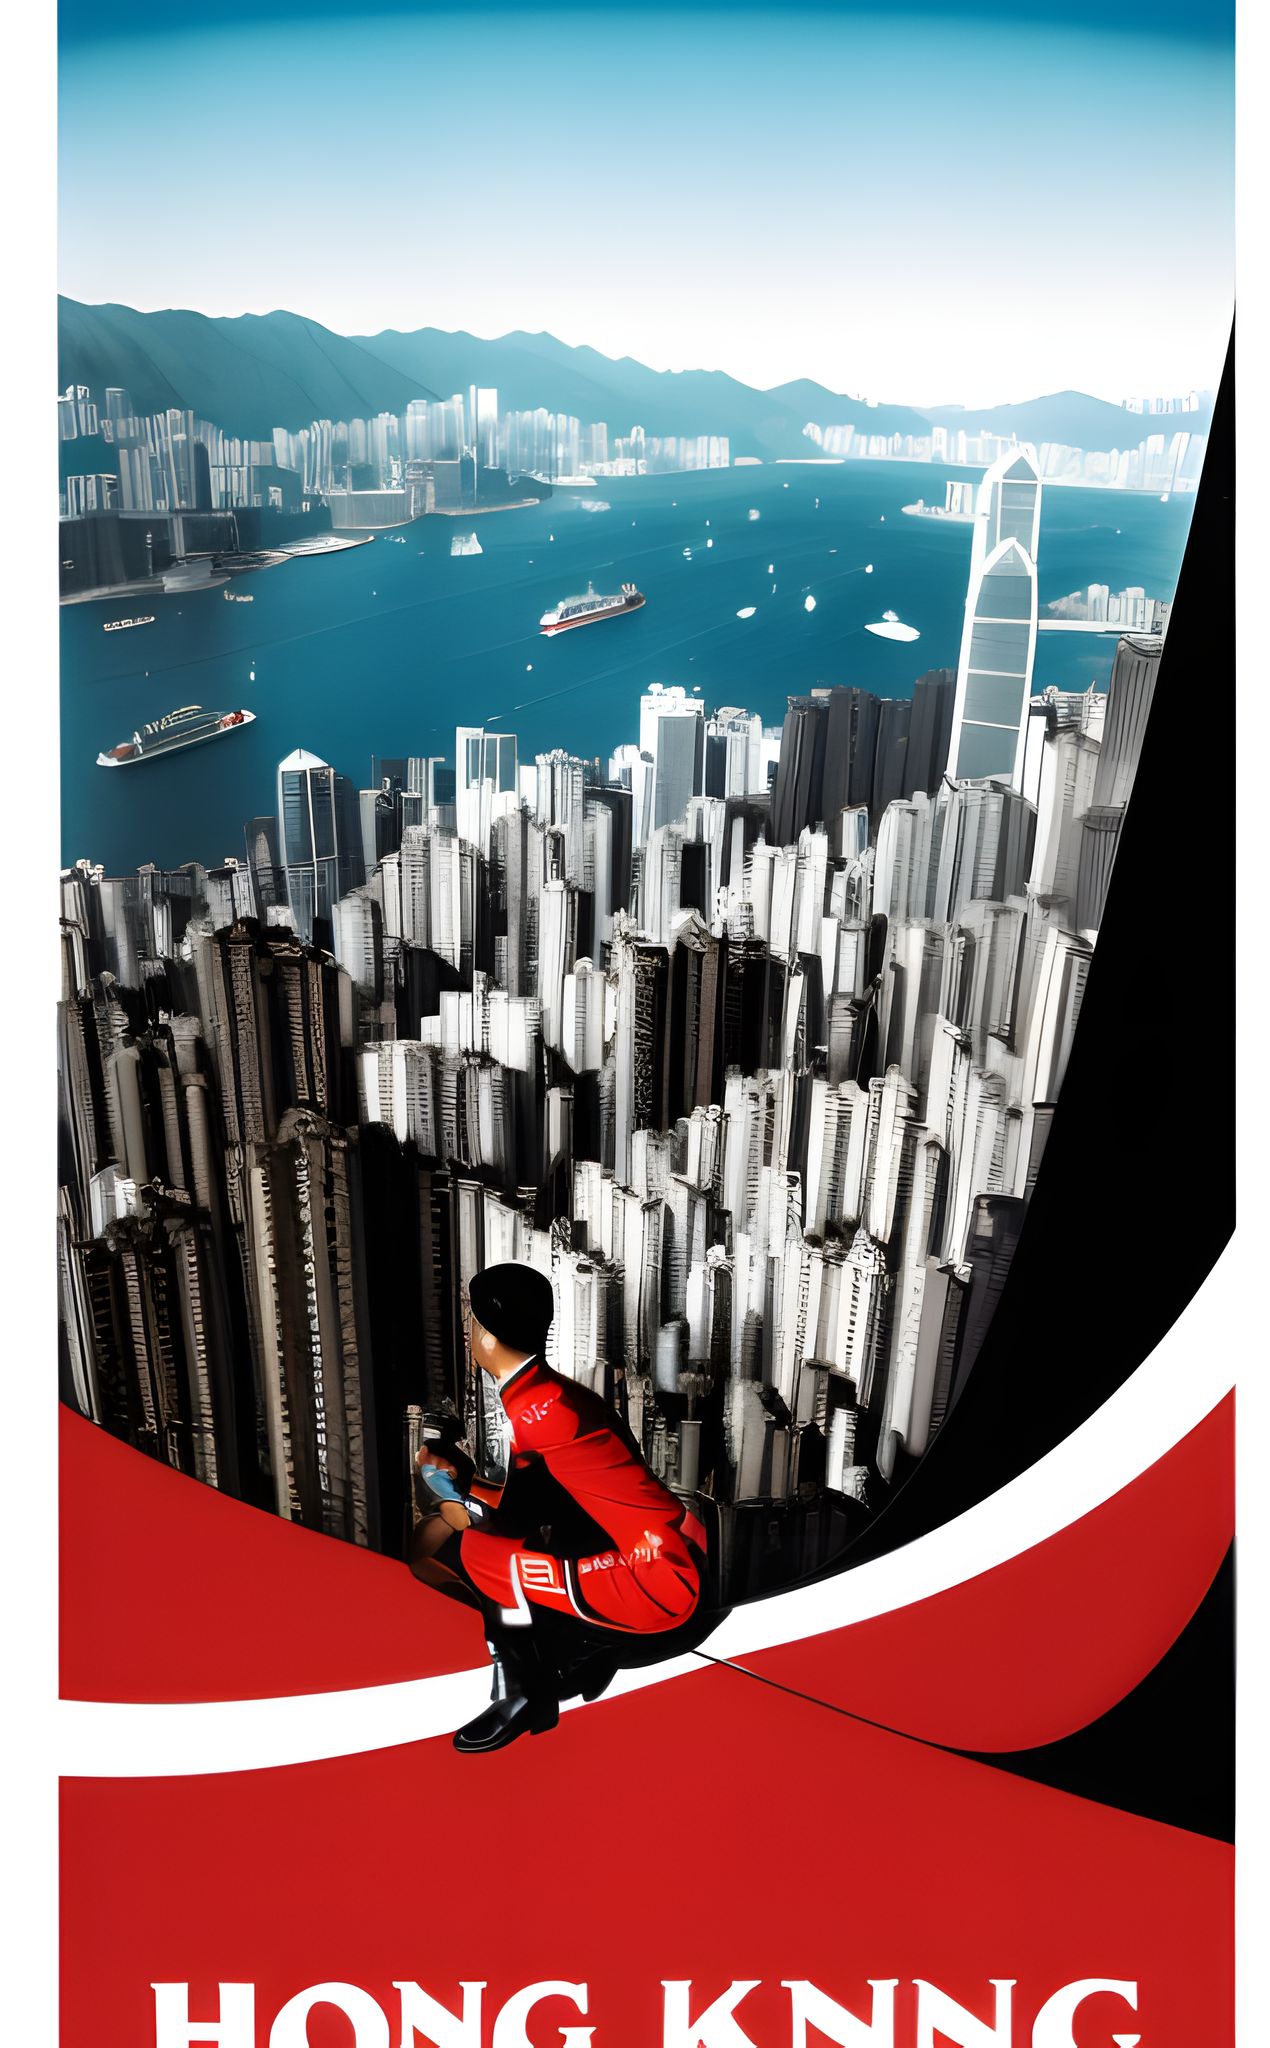 propaganda-poster-for-Hong-Kong-1990s-wl2v